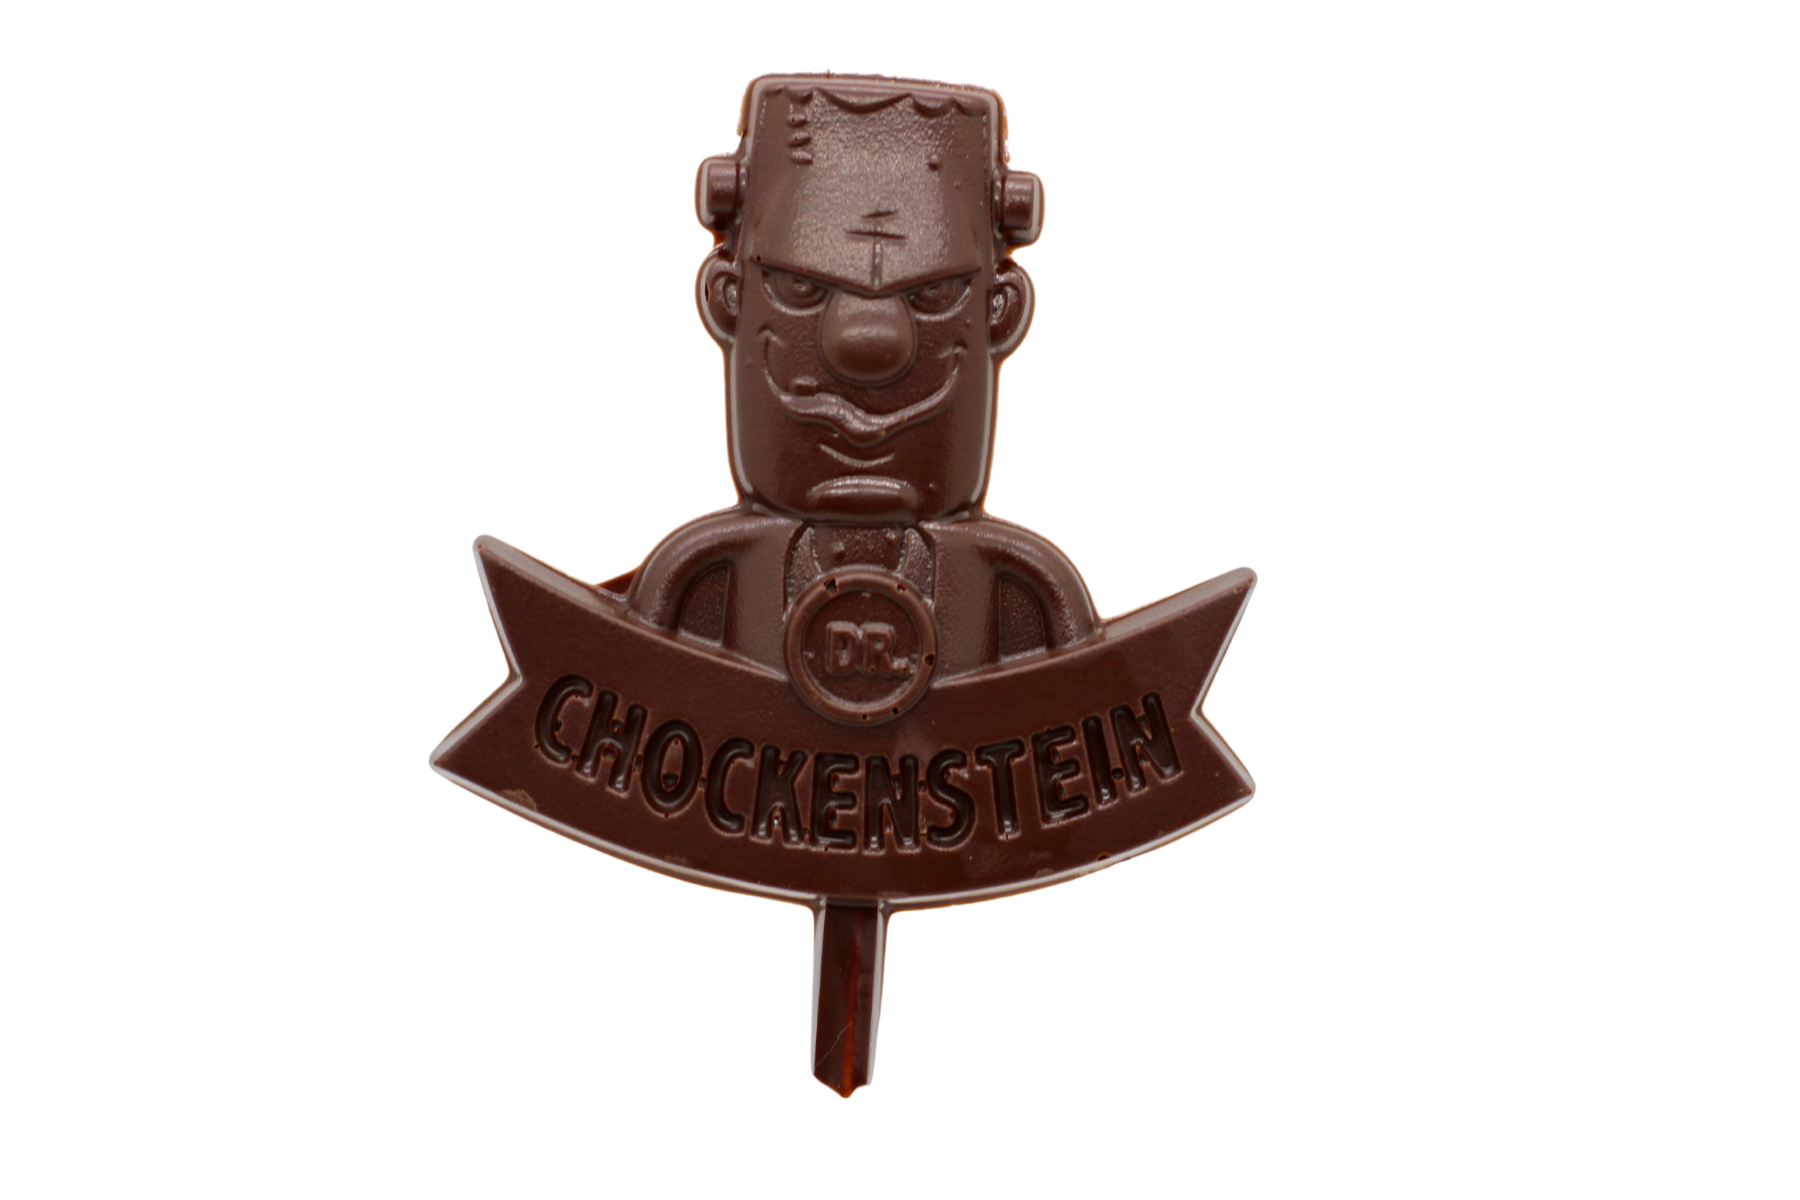 Dr. Chockenstein Dark Chocolate Pop - Rich Halloween treat featuring a unique Frankenstein design and individual packaging.